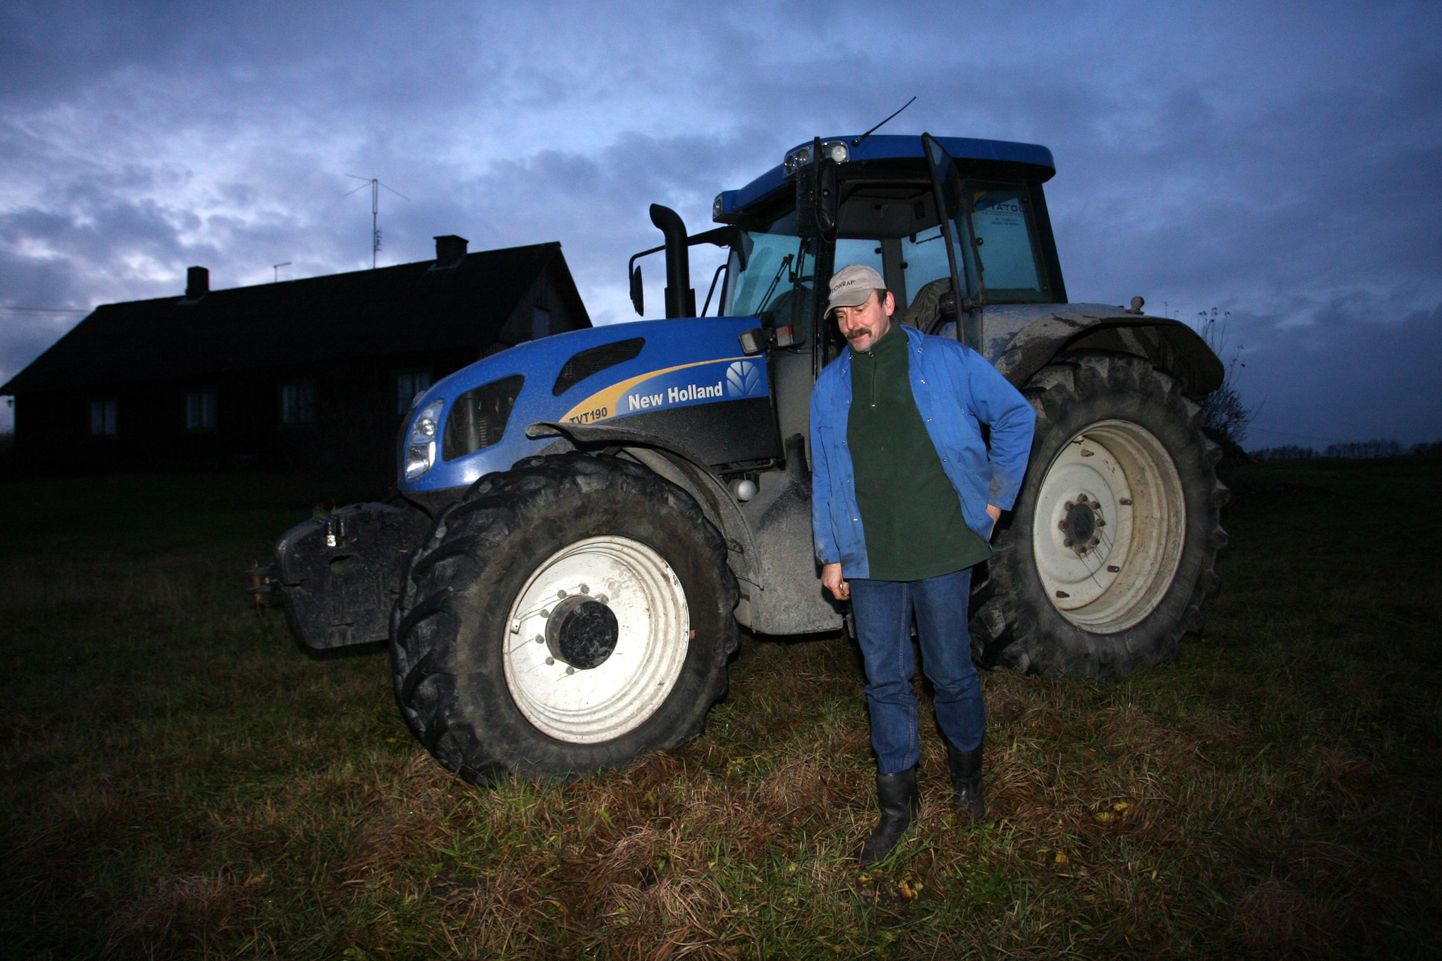 OÜ Valdereks traktorist Toomas Känd leiab, et riik ajab käibemaksu tõstes pilli lõhki. Tema saab küll palka firmalt, aga kui firmal tekivad probleemid, läheb ka töötajatel raskeks.